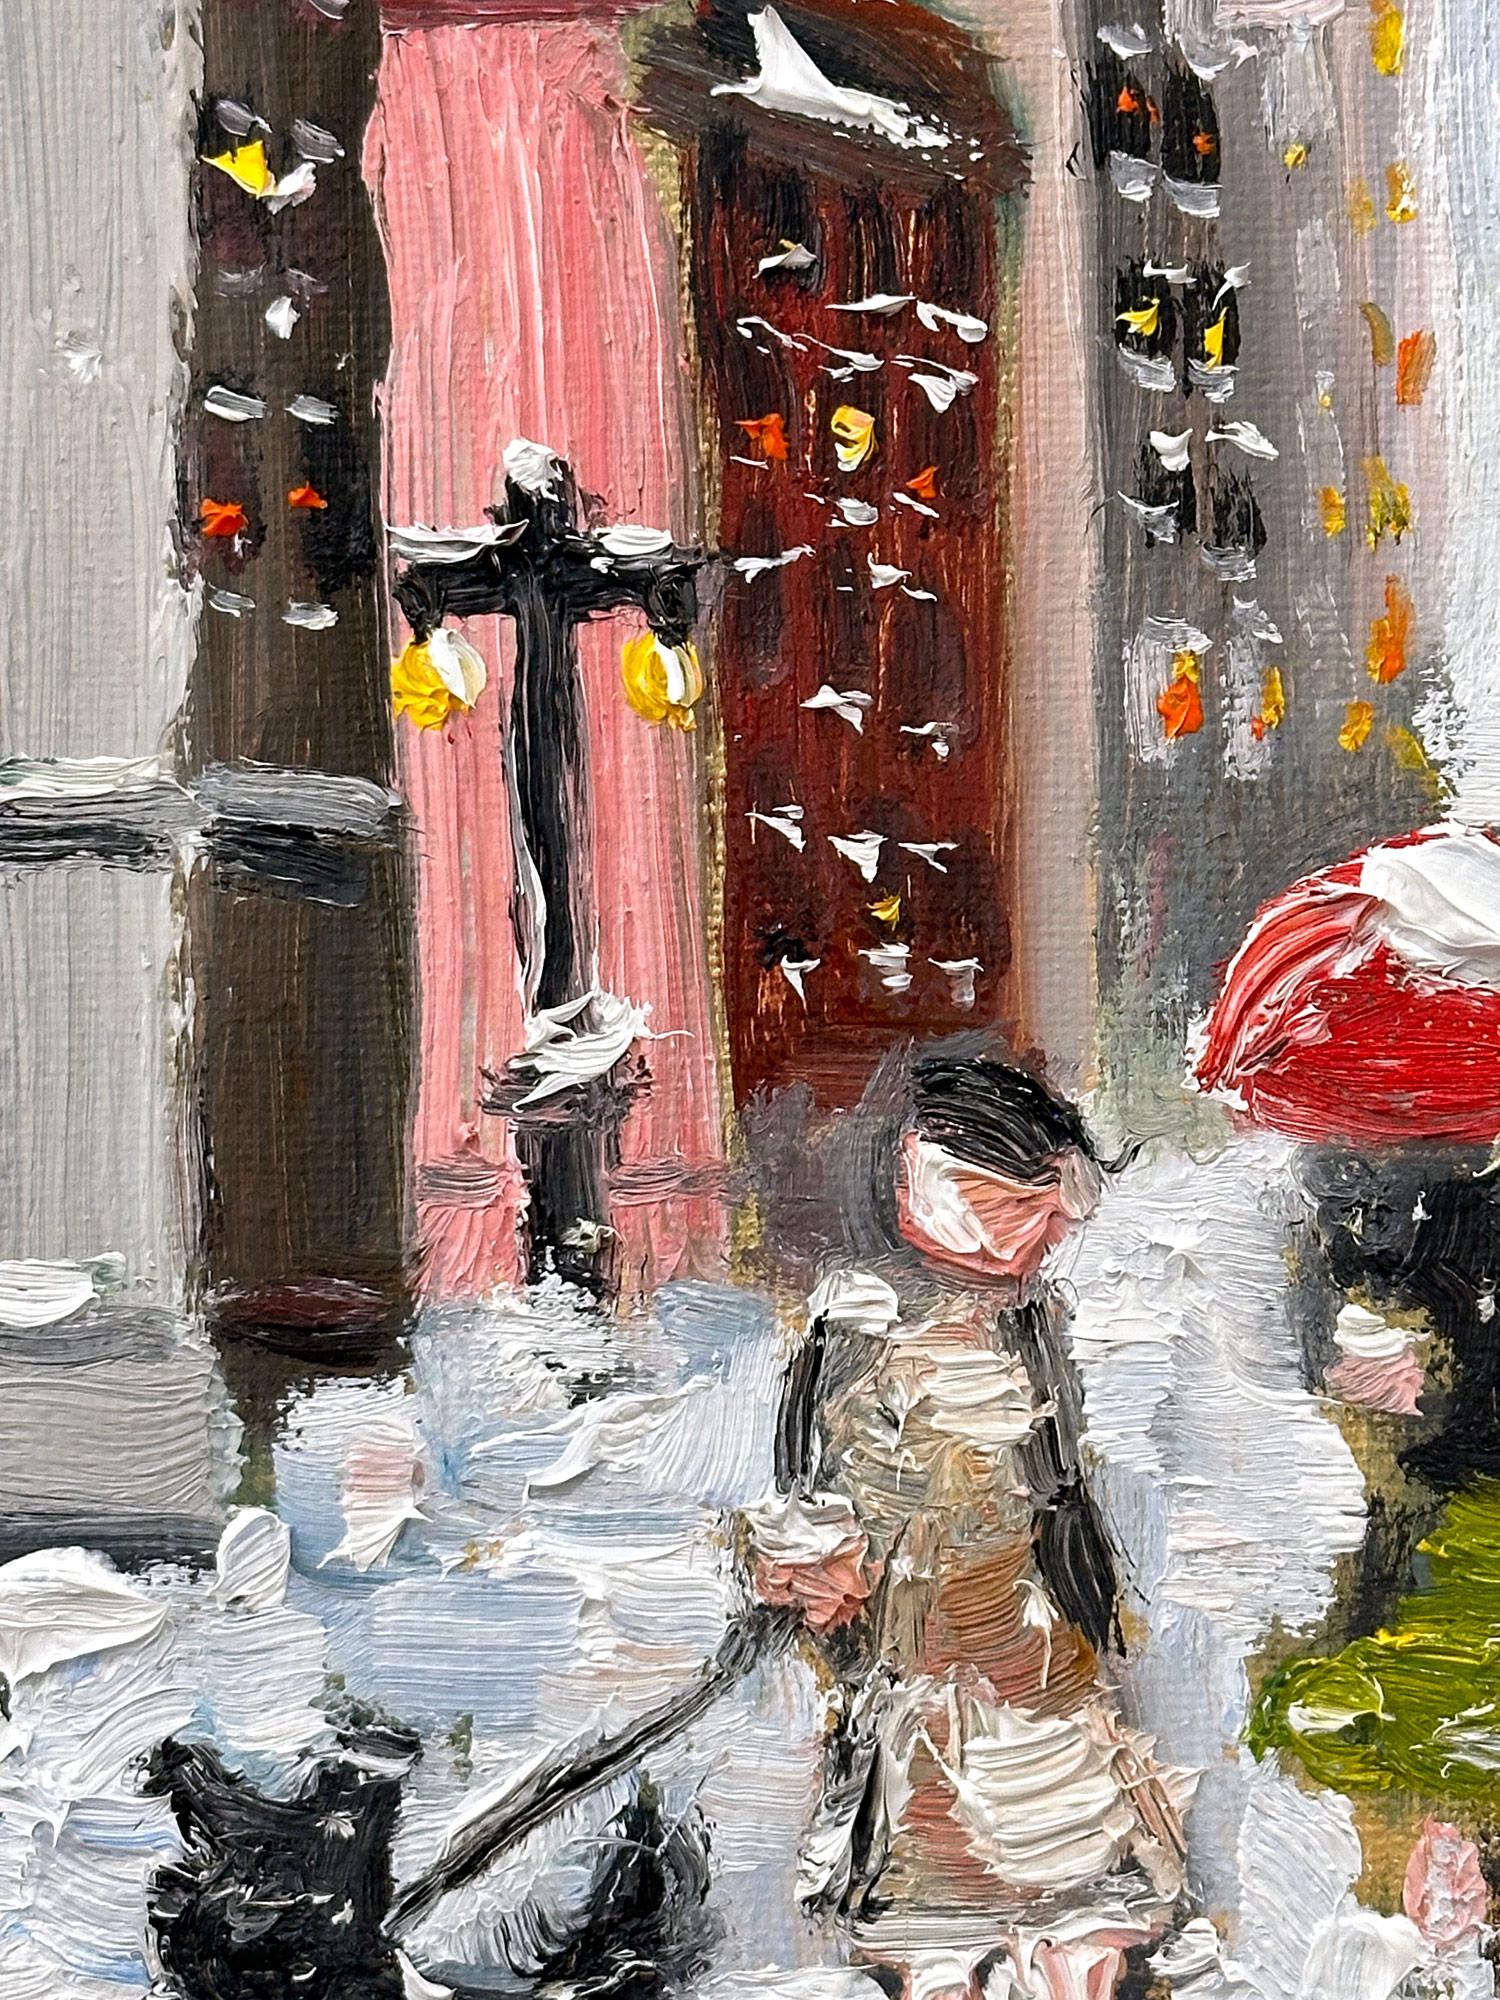 Eine charmante Darstellung von Schnee in New York City auf der Fifth Avenue mit Figuren, die einen Hund ausführen. Eine gemütliche impressionistische Straßenszene mit Farben aus Kobalt, Hellrosa, Weiß und gebranntem Siena. Eine ikonische